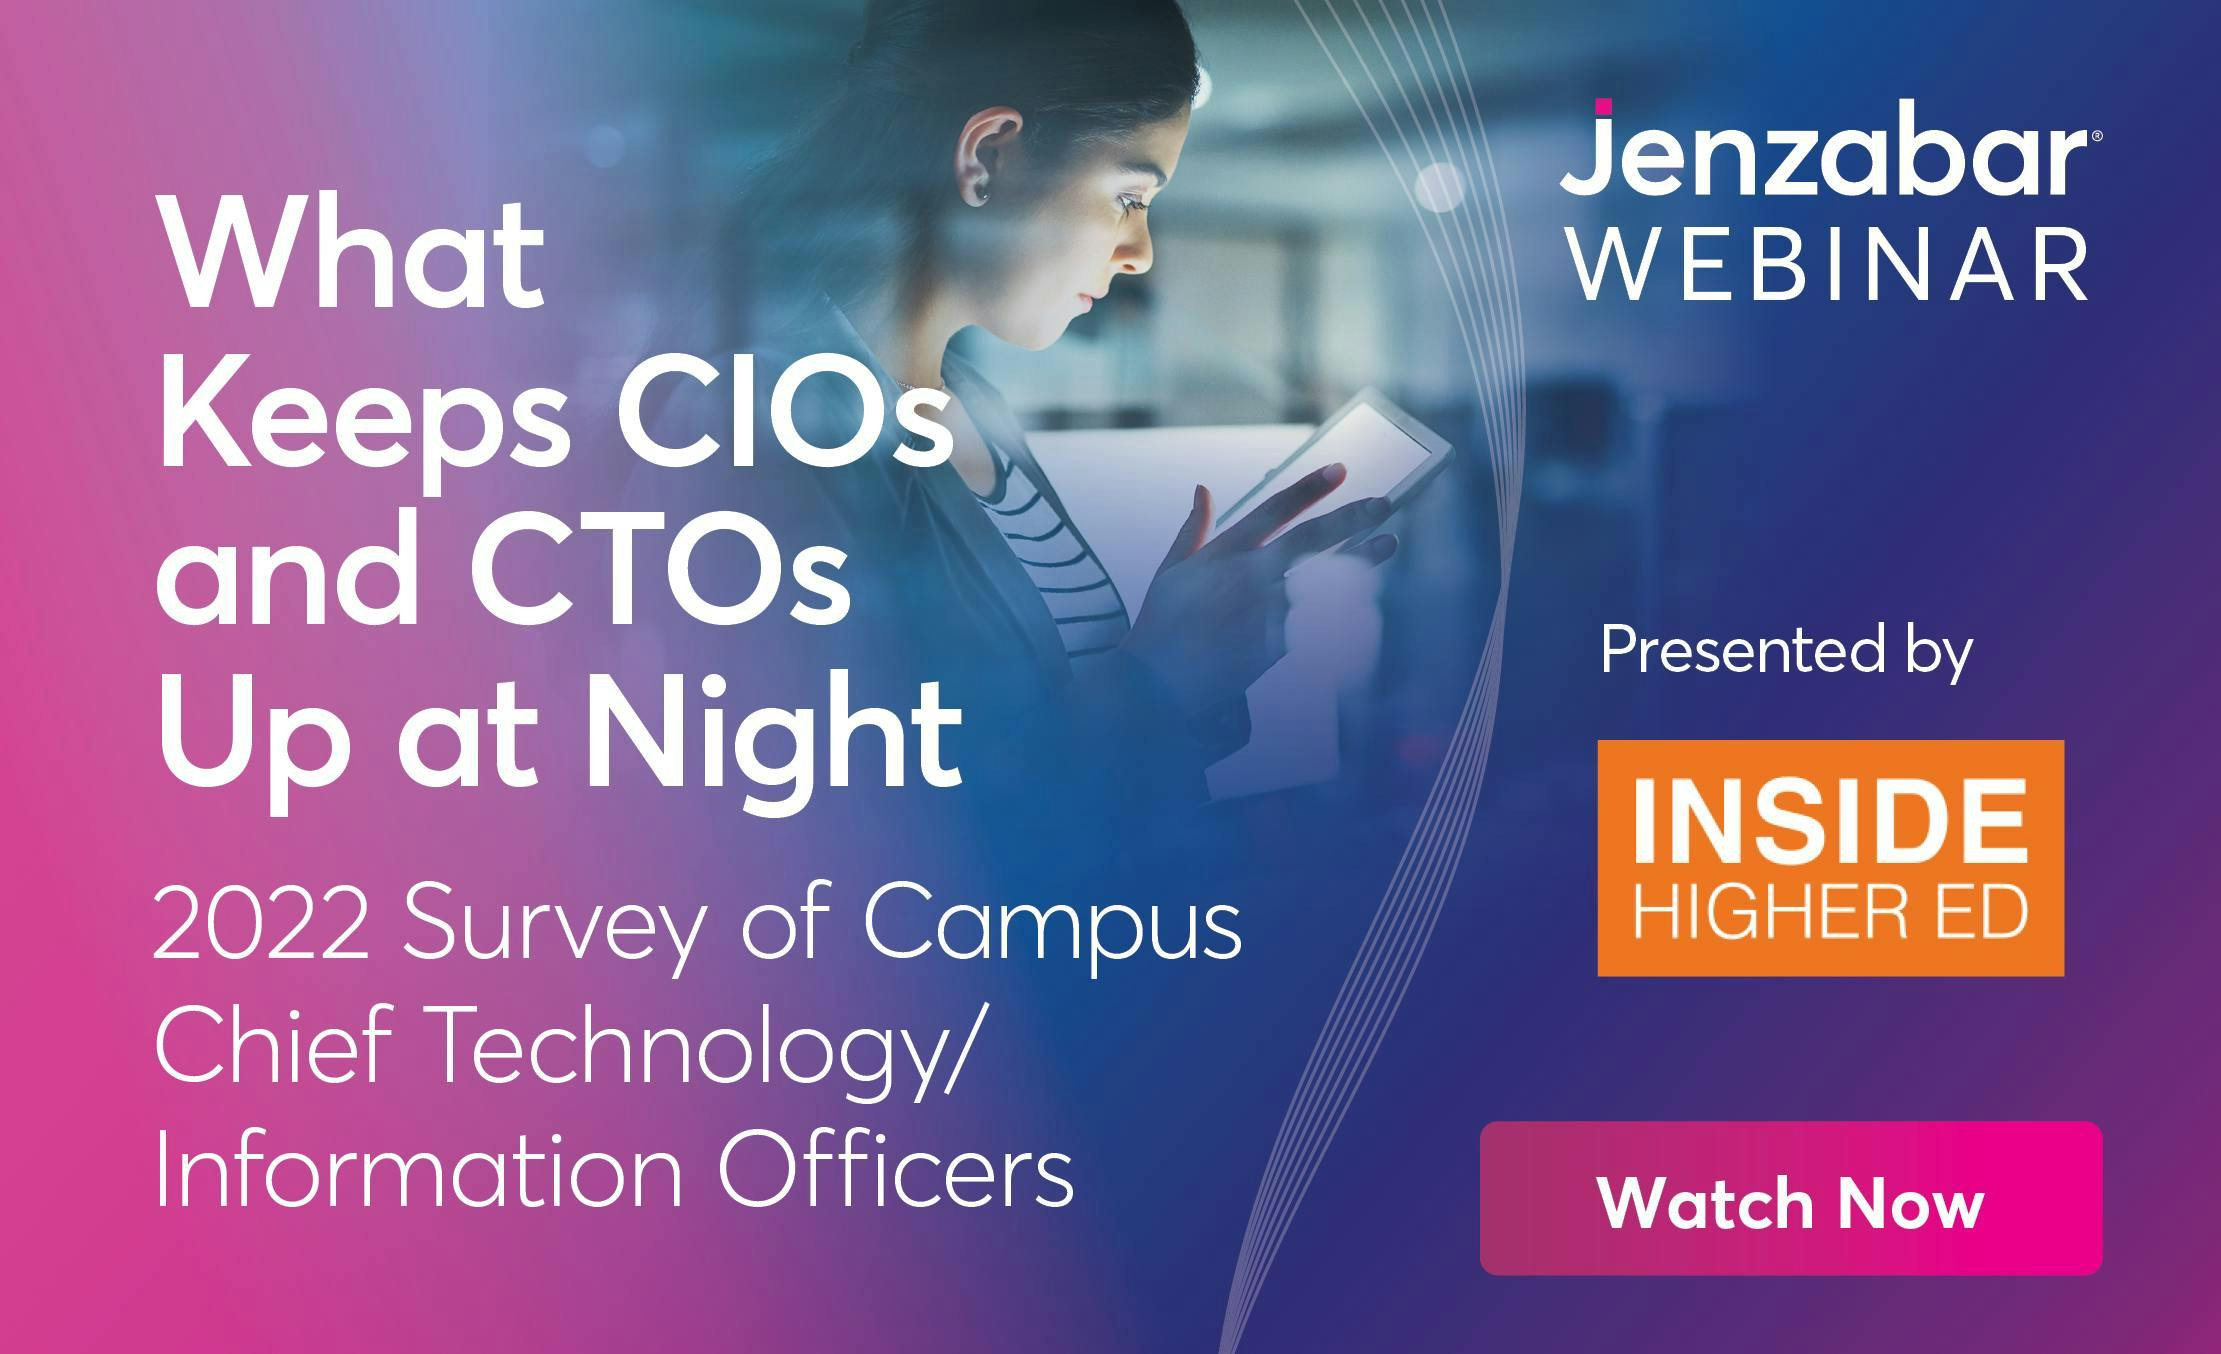 Webinar What Keeps CIOs and CTOs Up at Night